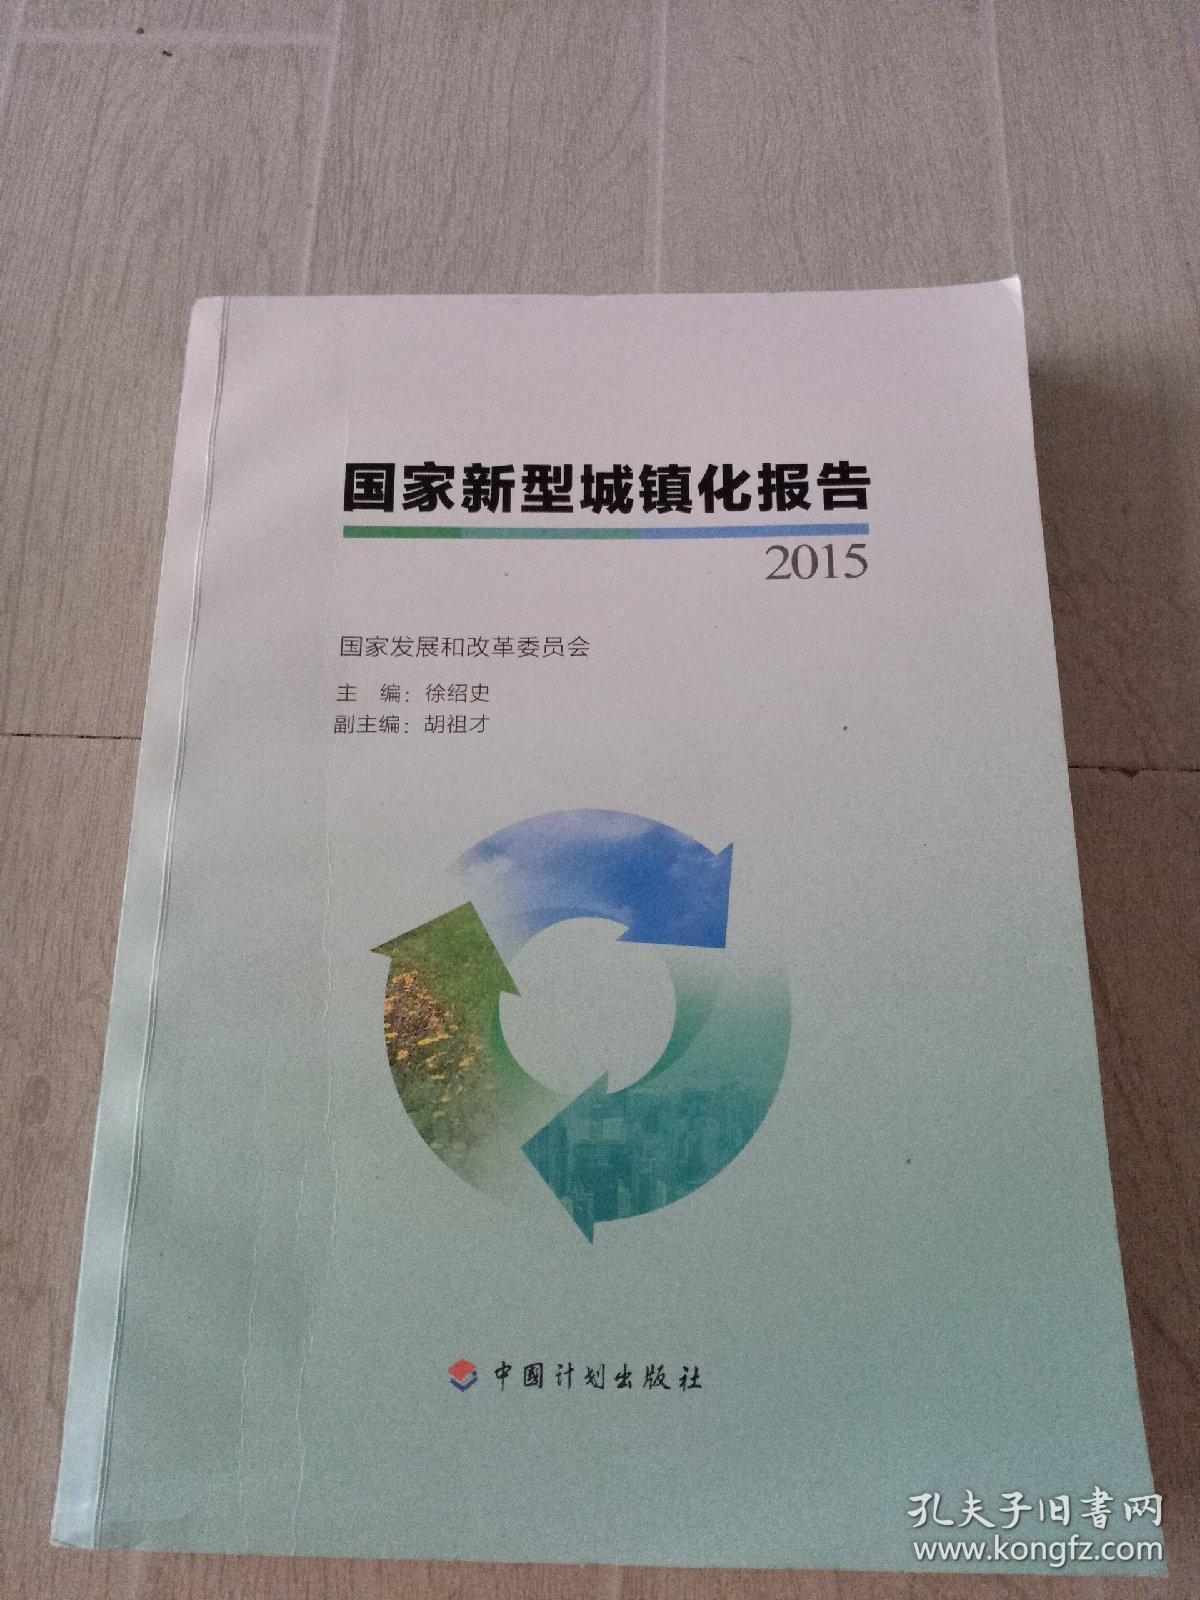 国家新型城镇化报告2015